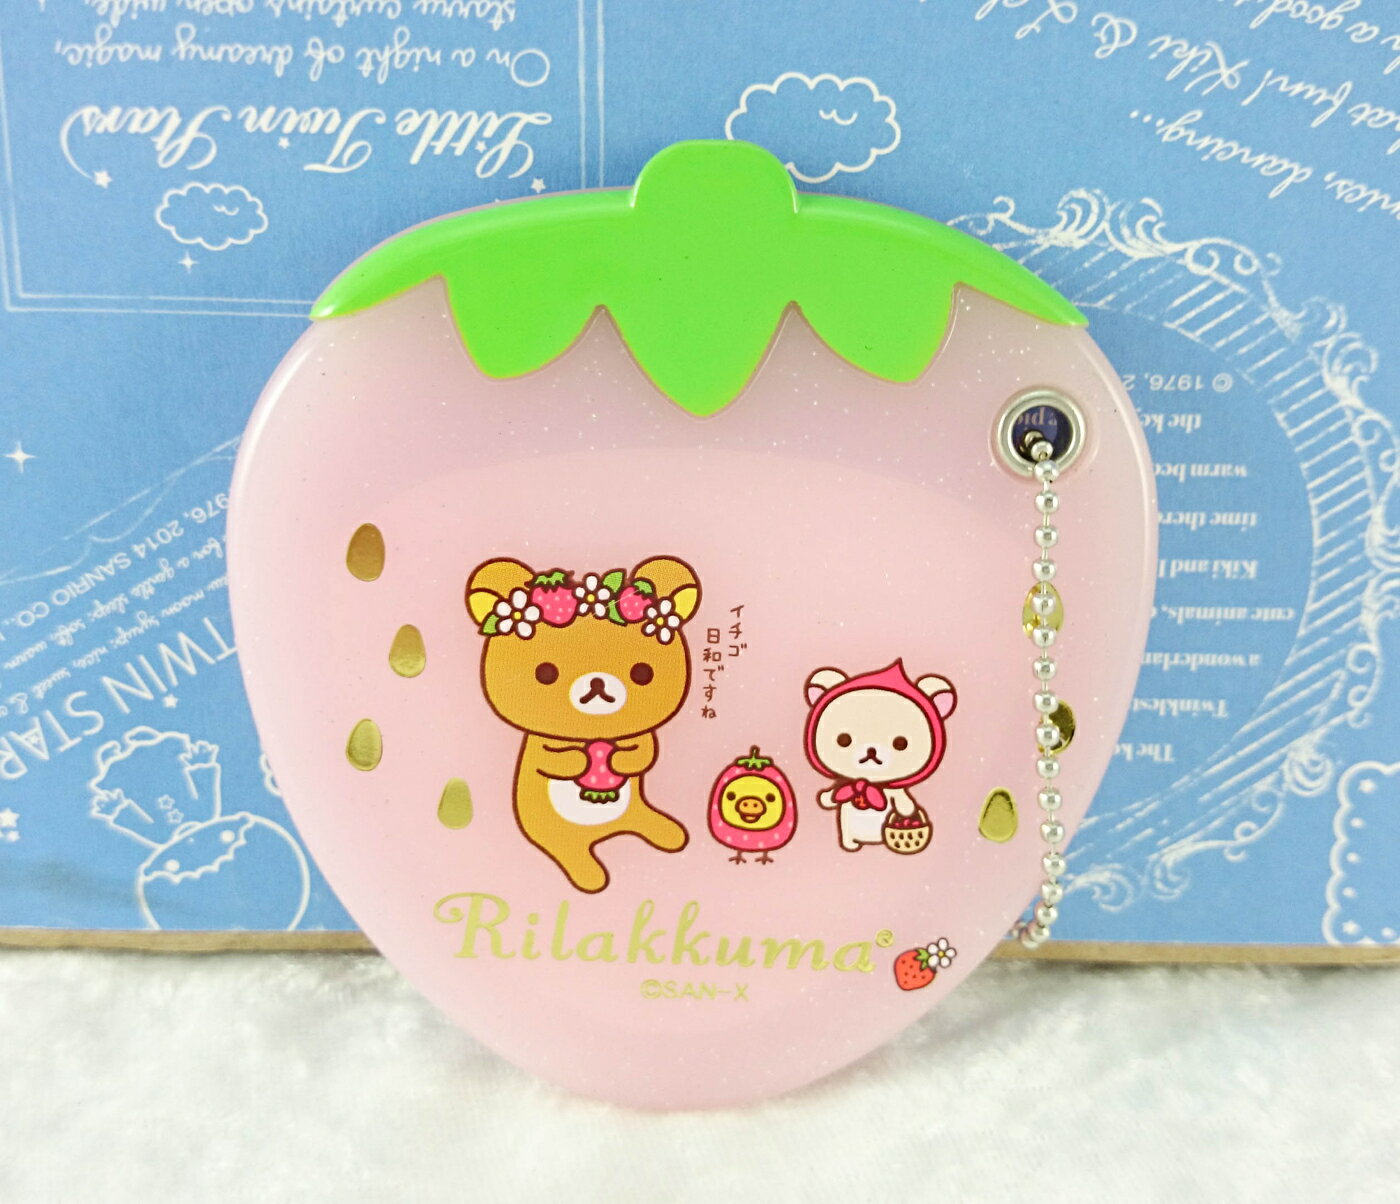 【震撼精品百貨】Rilakkuma San-X 拉拉熊懶懶熊 San-X 造型鏡/隨身鏡-草莓#50050 震撼日式精品百貨